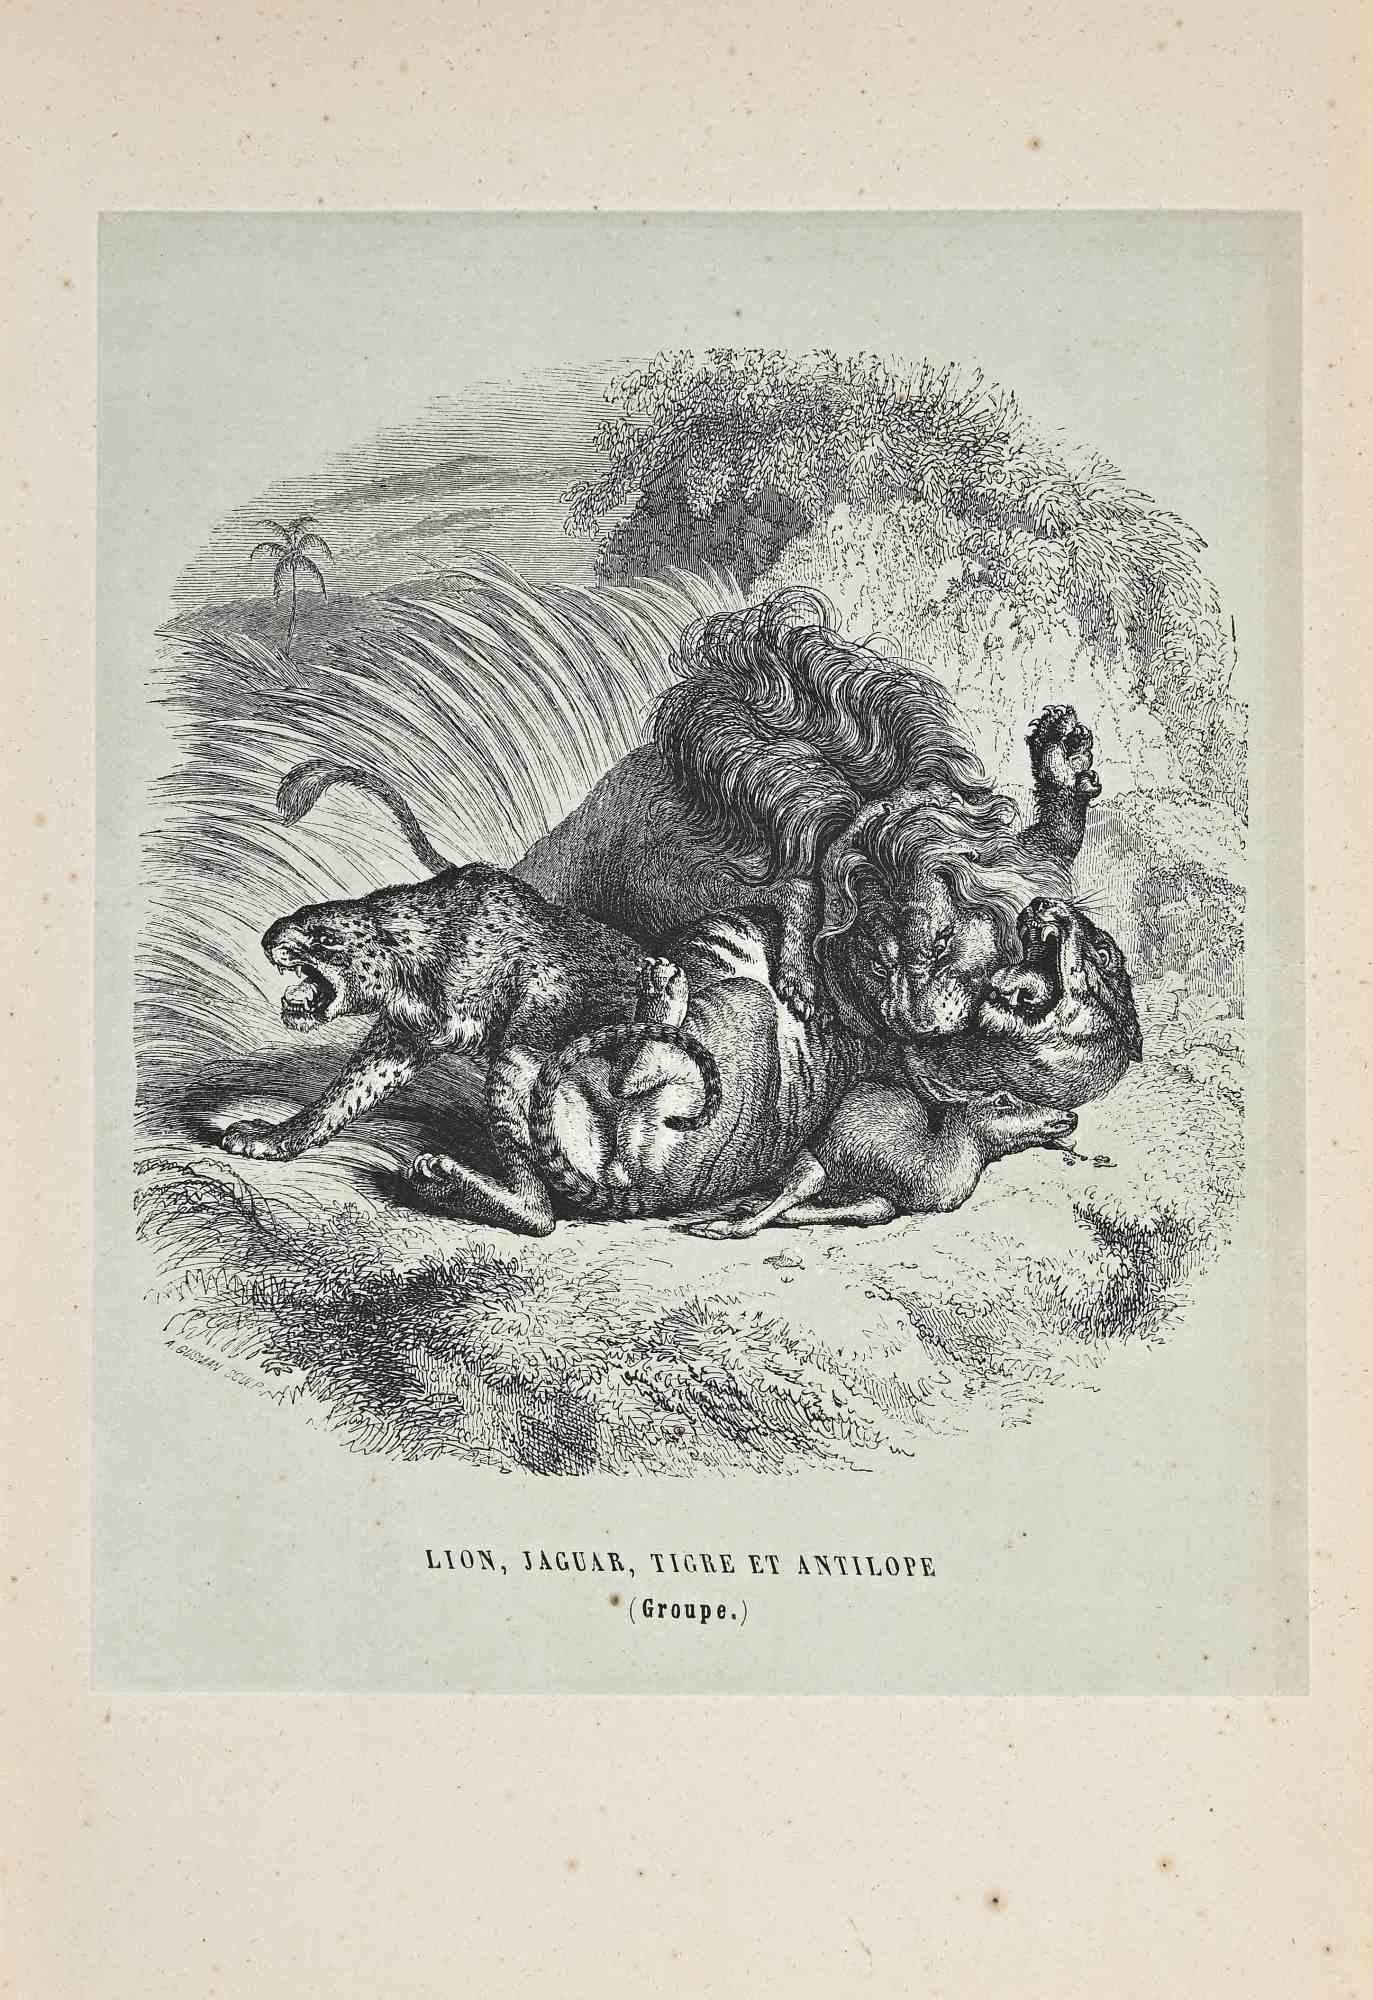 Le Lion, le Jaguar, le Tigre est une lithographie originale sur papier couleur ivoire, réalisée par Paul Gervais (1816-1879). L'œuvre est tirée de la série "Les Trois Règnes de la Nature", et a été publiée en 1854.

Bonnes conditions avec de petites